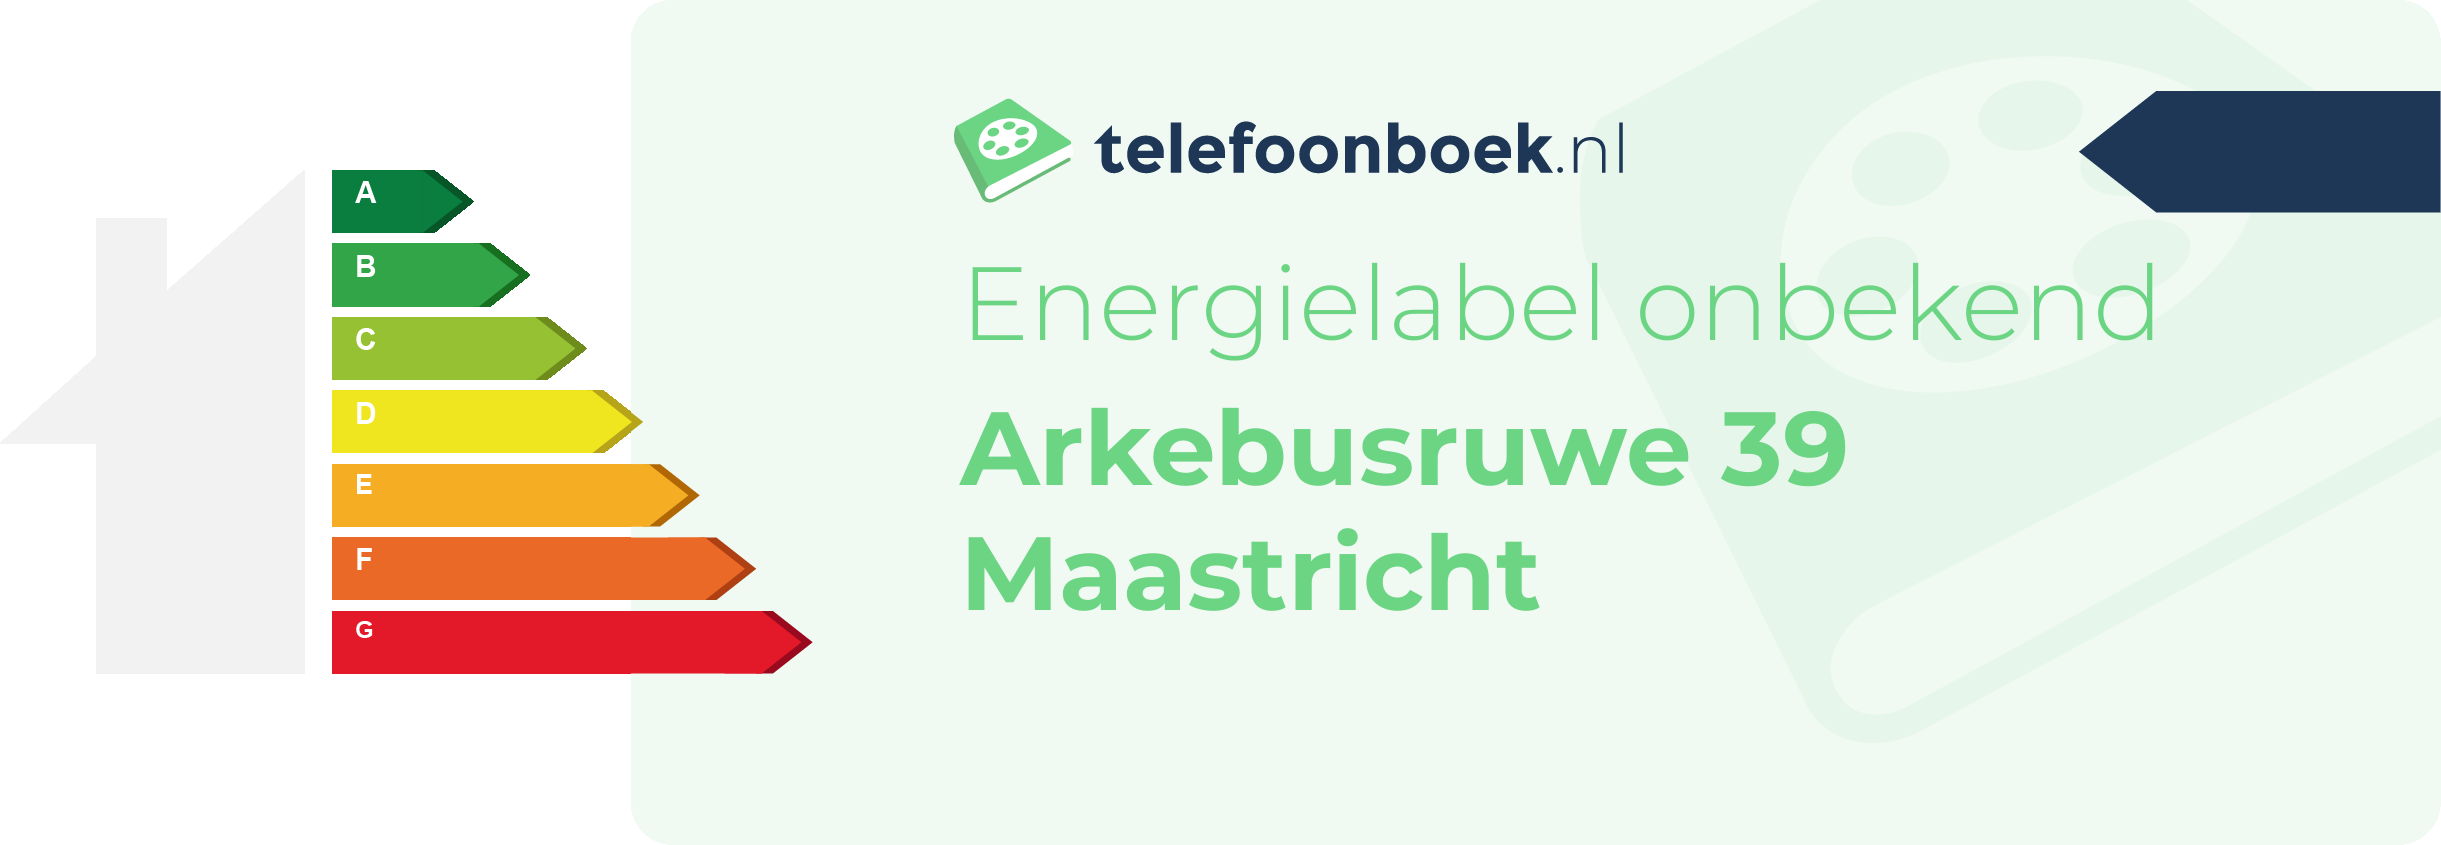 Energielabel Arkebusruwe 39 Maastricht